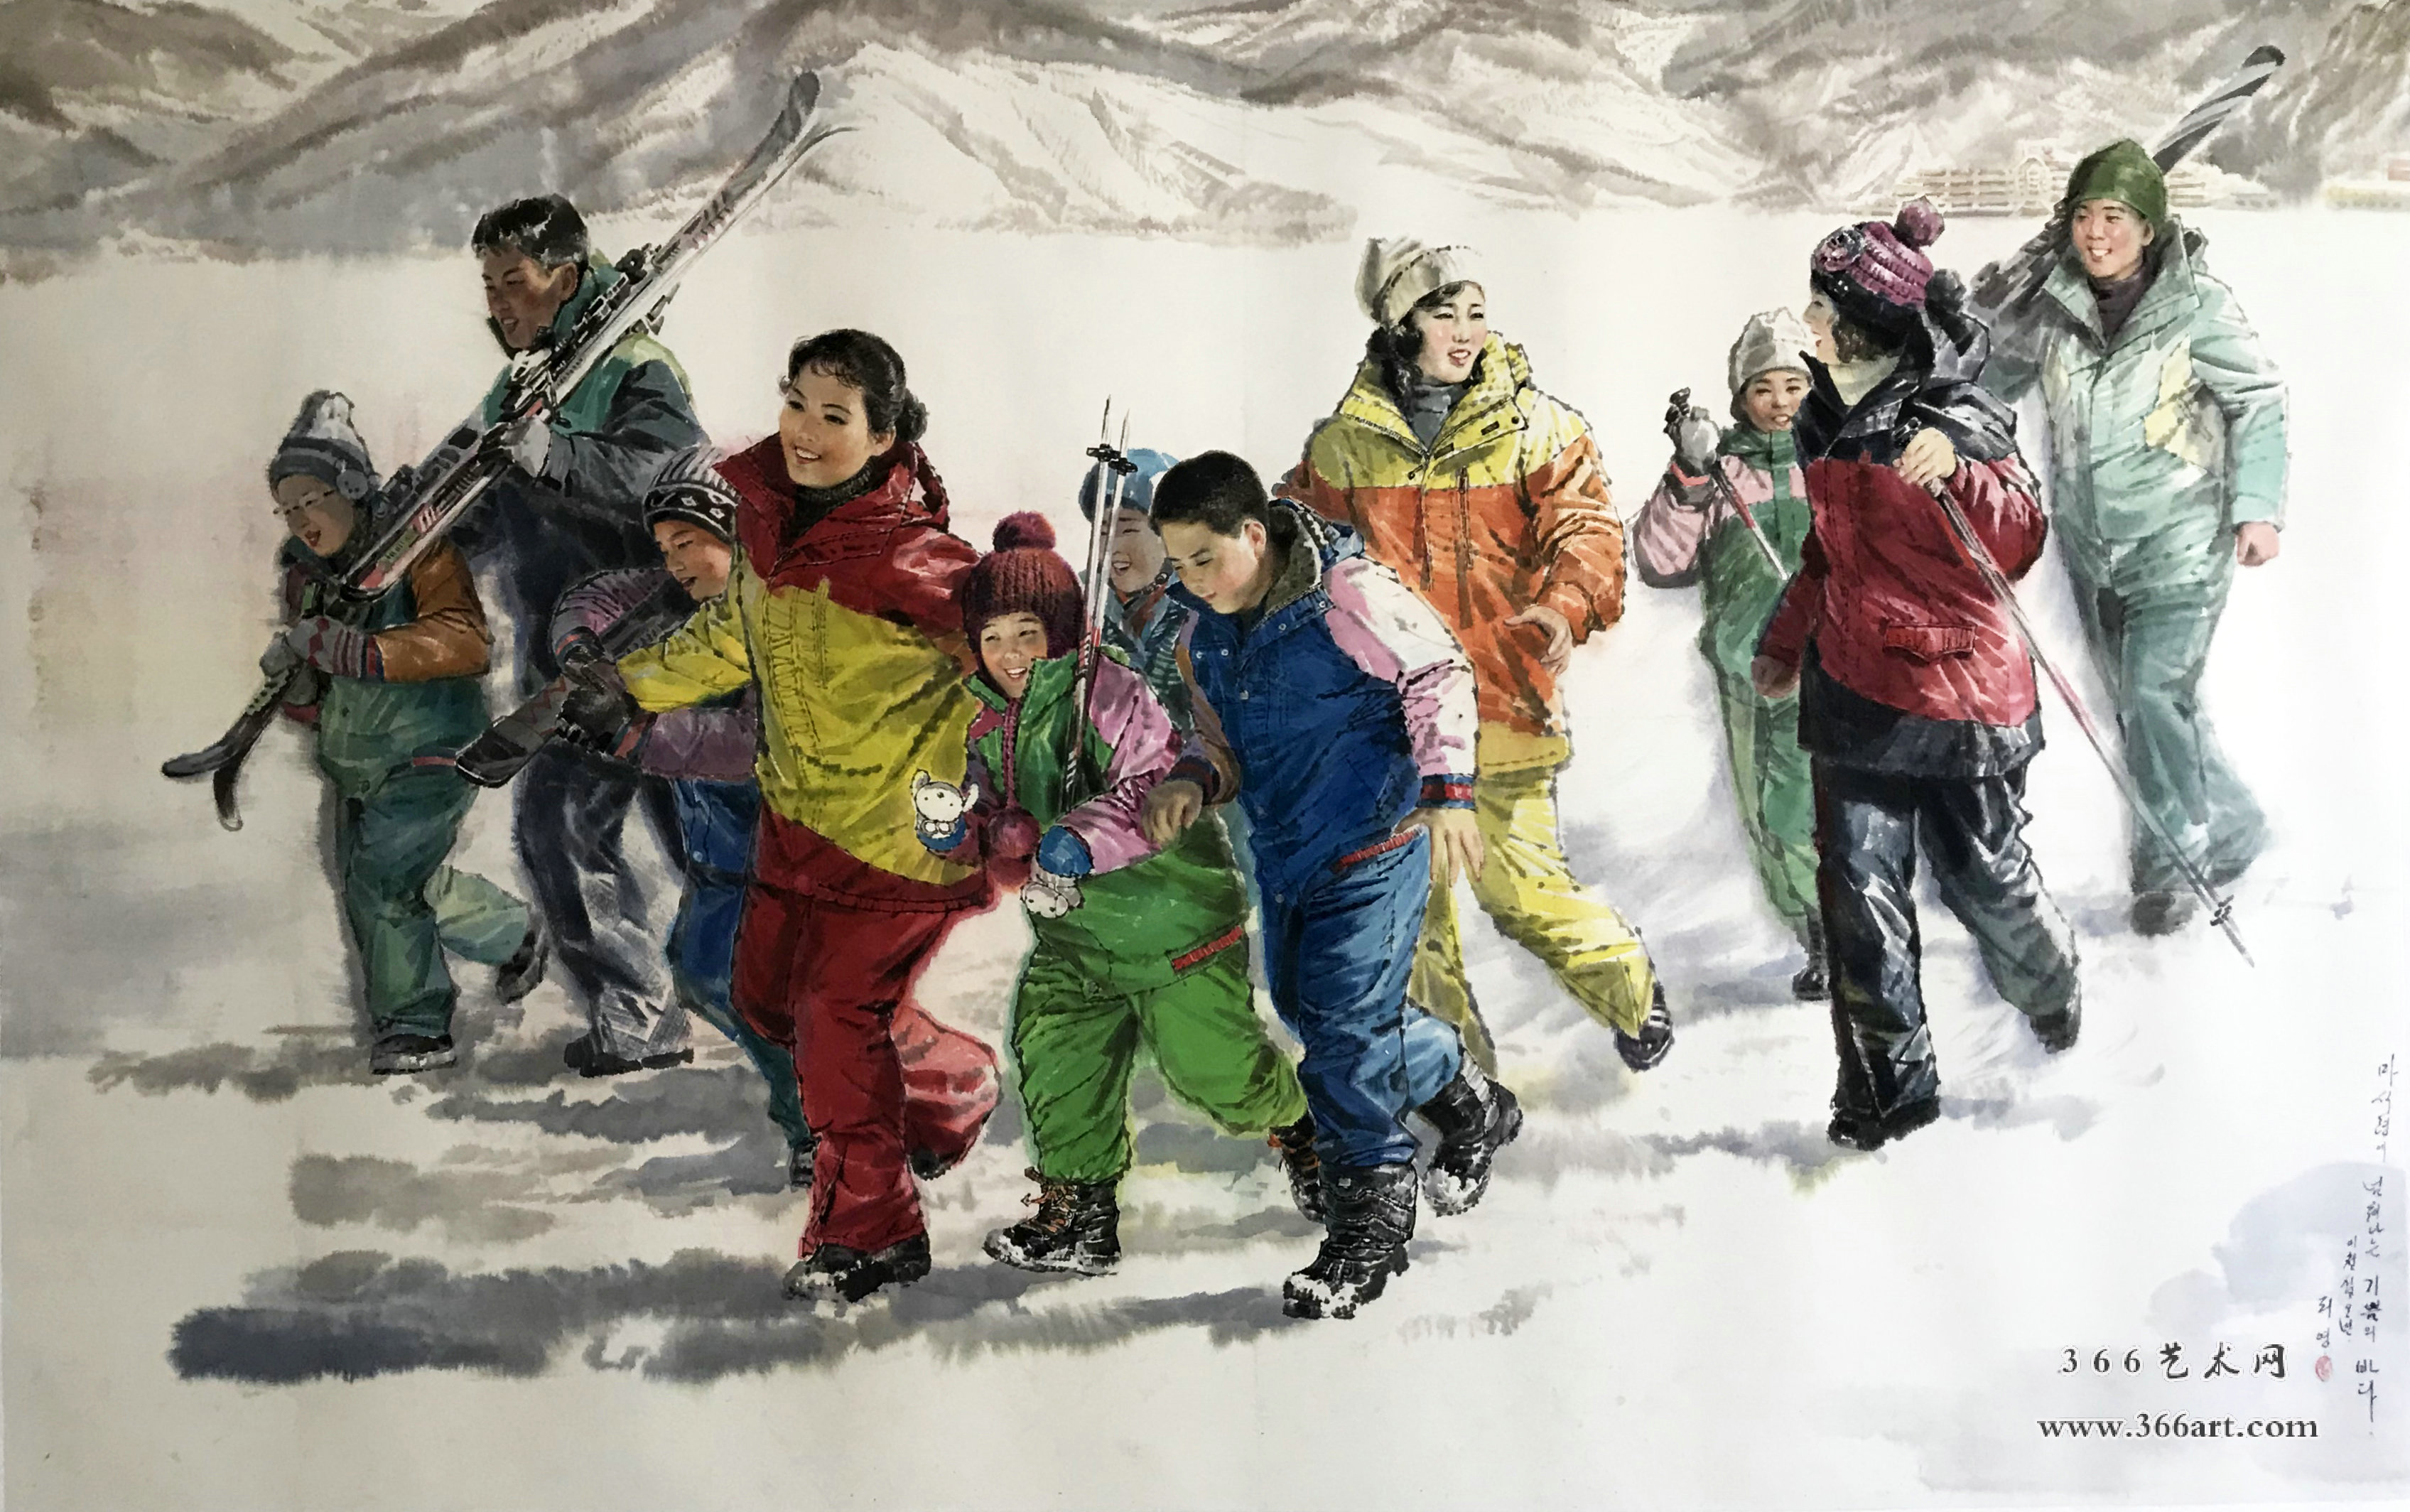 【朝鲜画】李英 滑雪 2015年 248 x 154cm